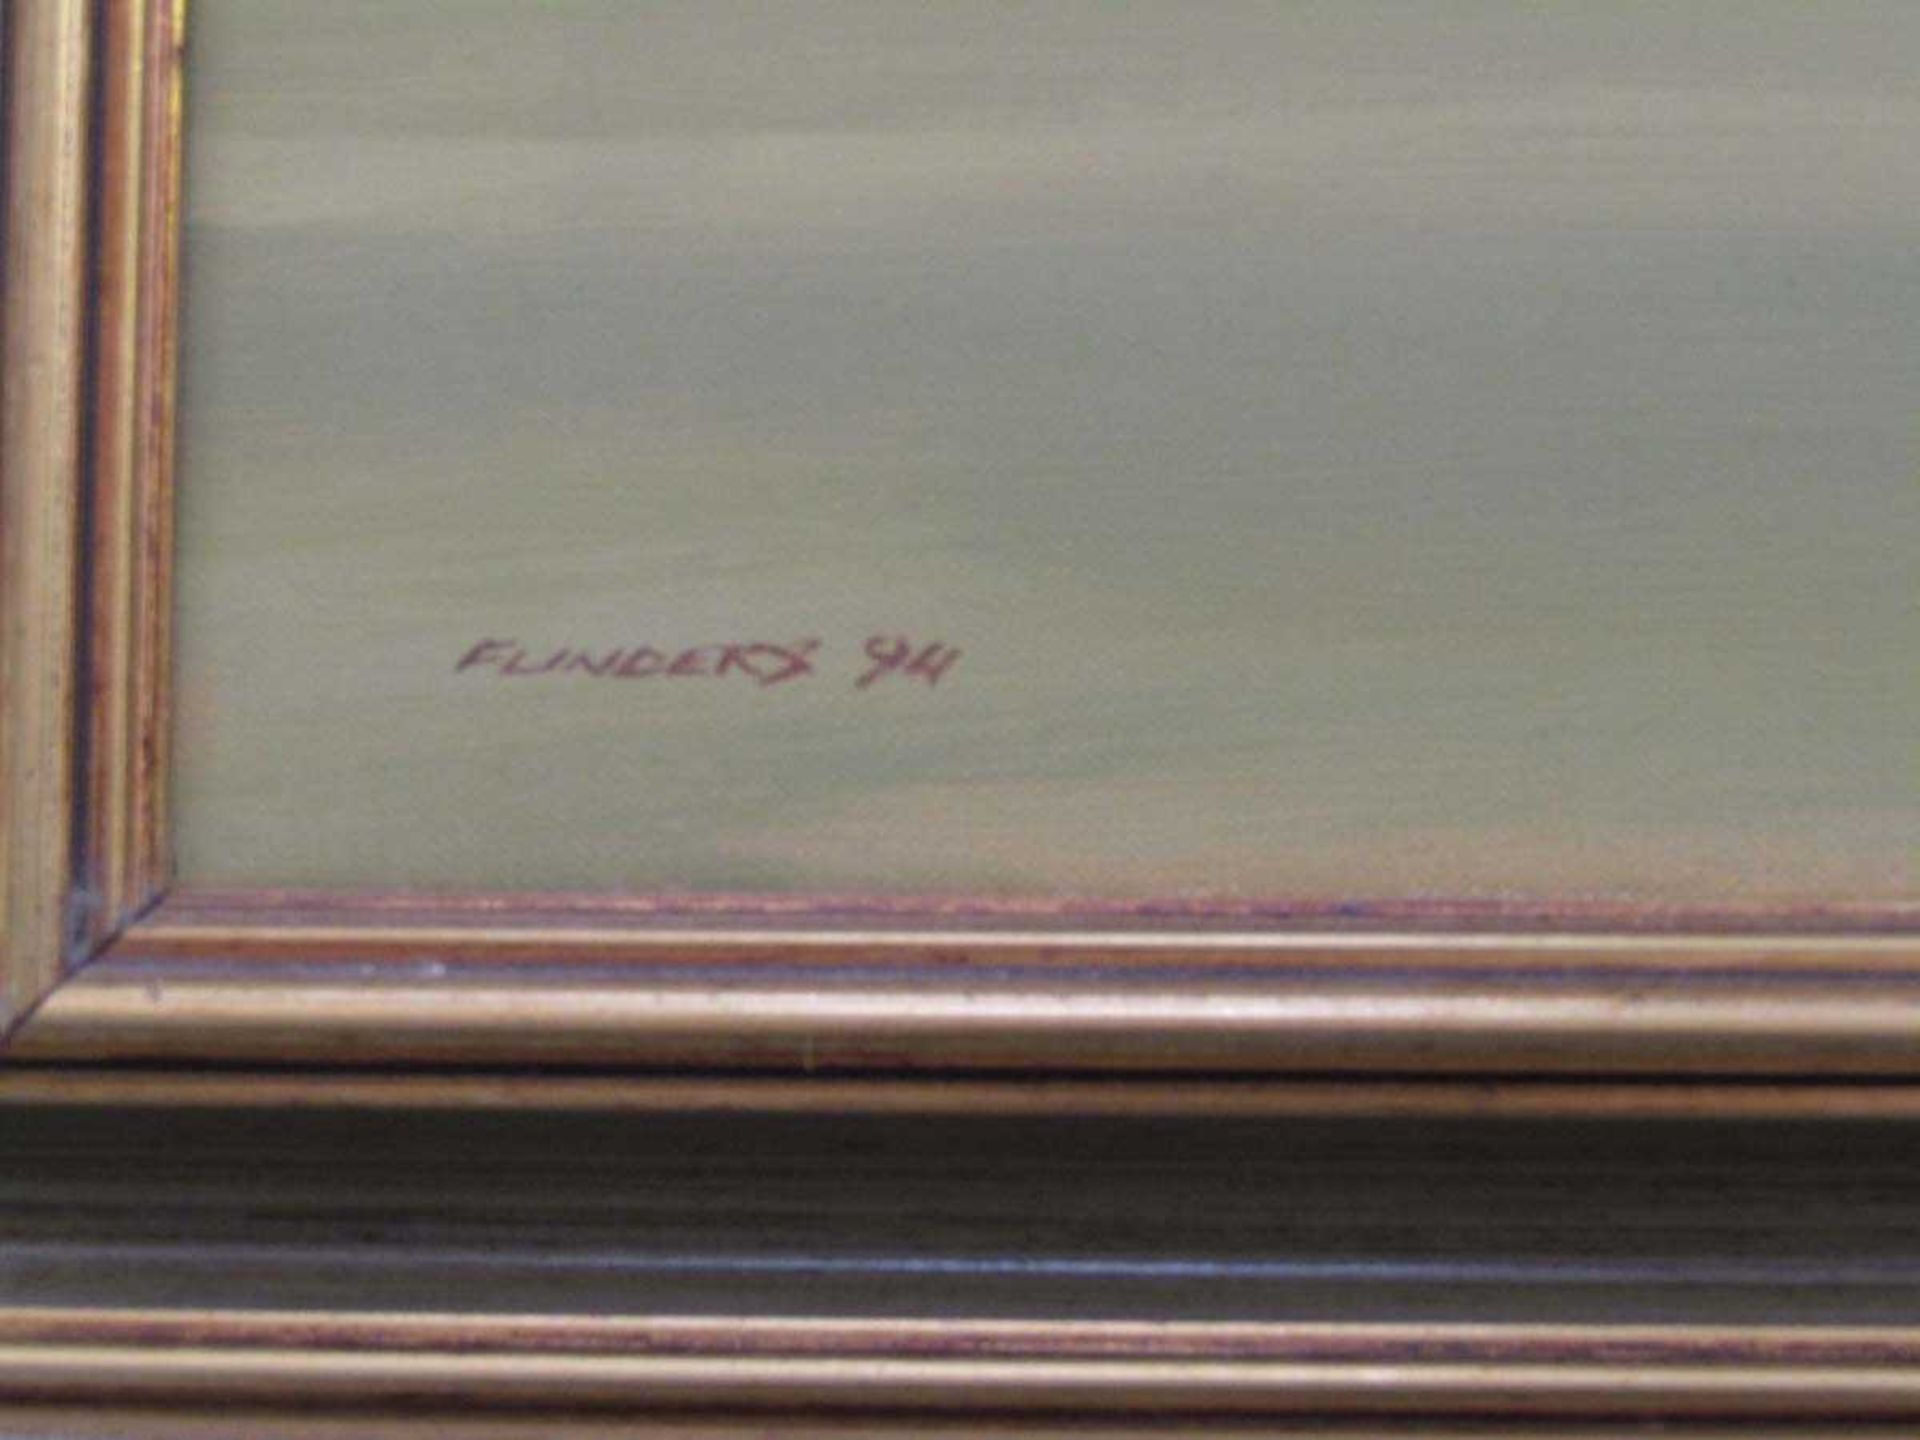 A framed oil on canvas of cricket scene, signed bottom left Flinders '94 - Image 2 of 2